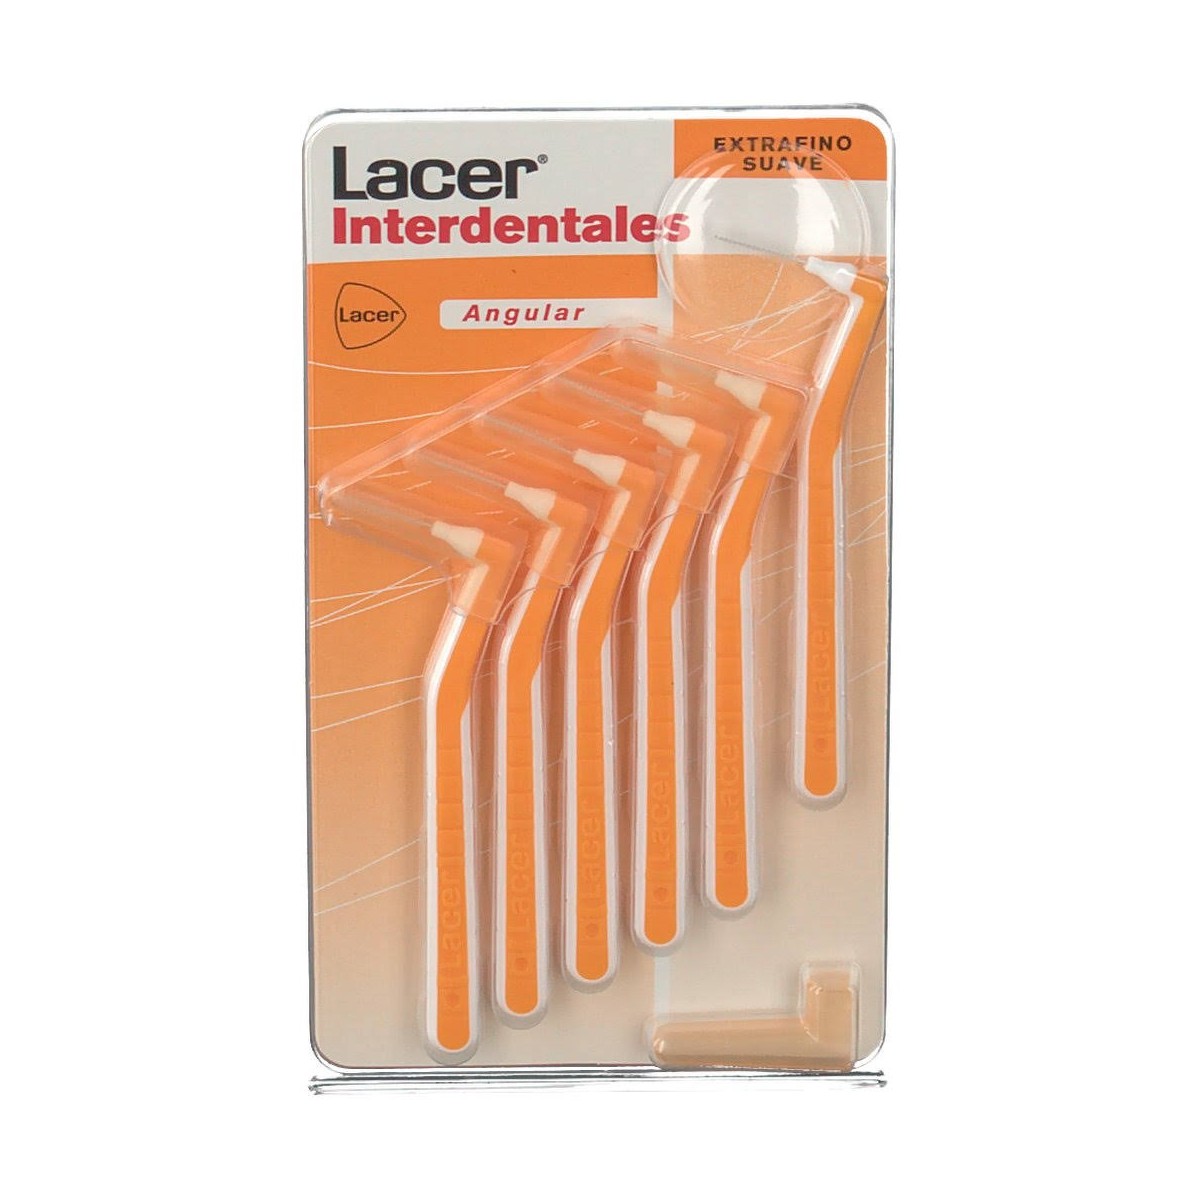 lacer-cepillo-interdental-extrafino-suave-angular